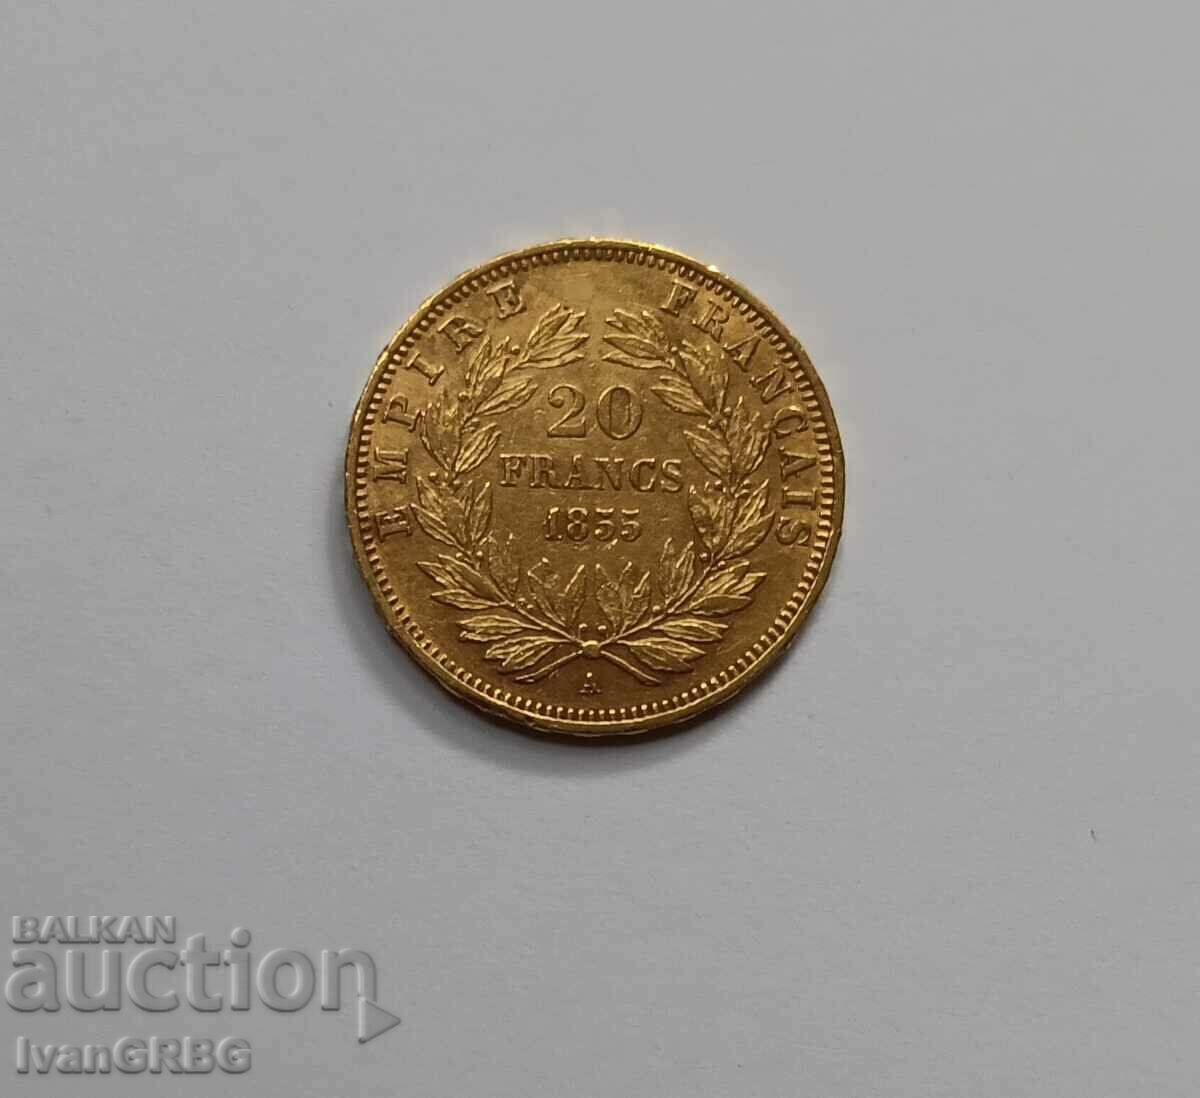 20 francs 1855 France gold coin Napoleon the Third ANCHOR A